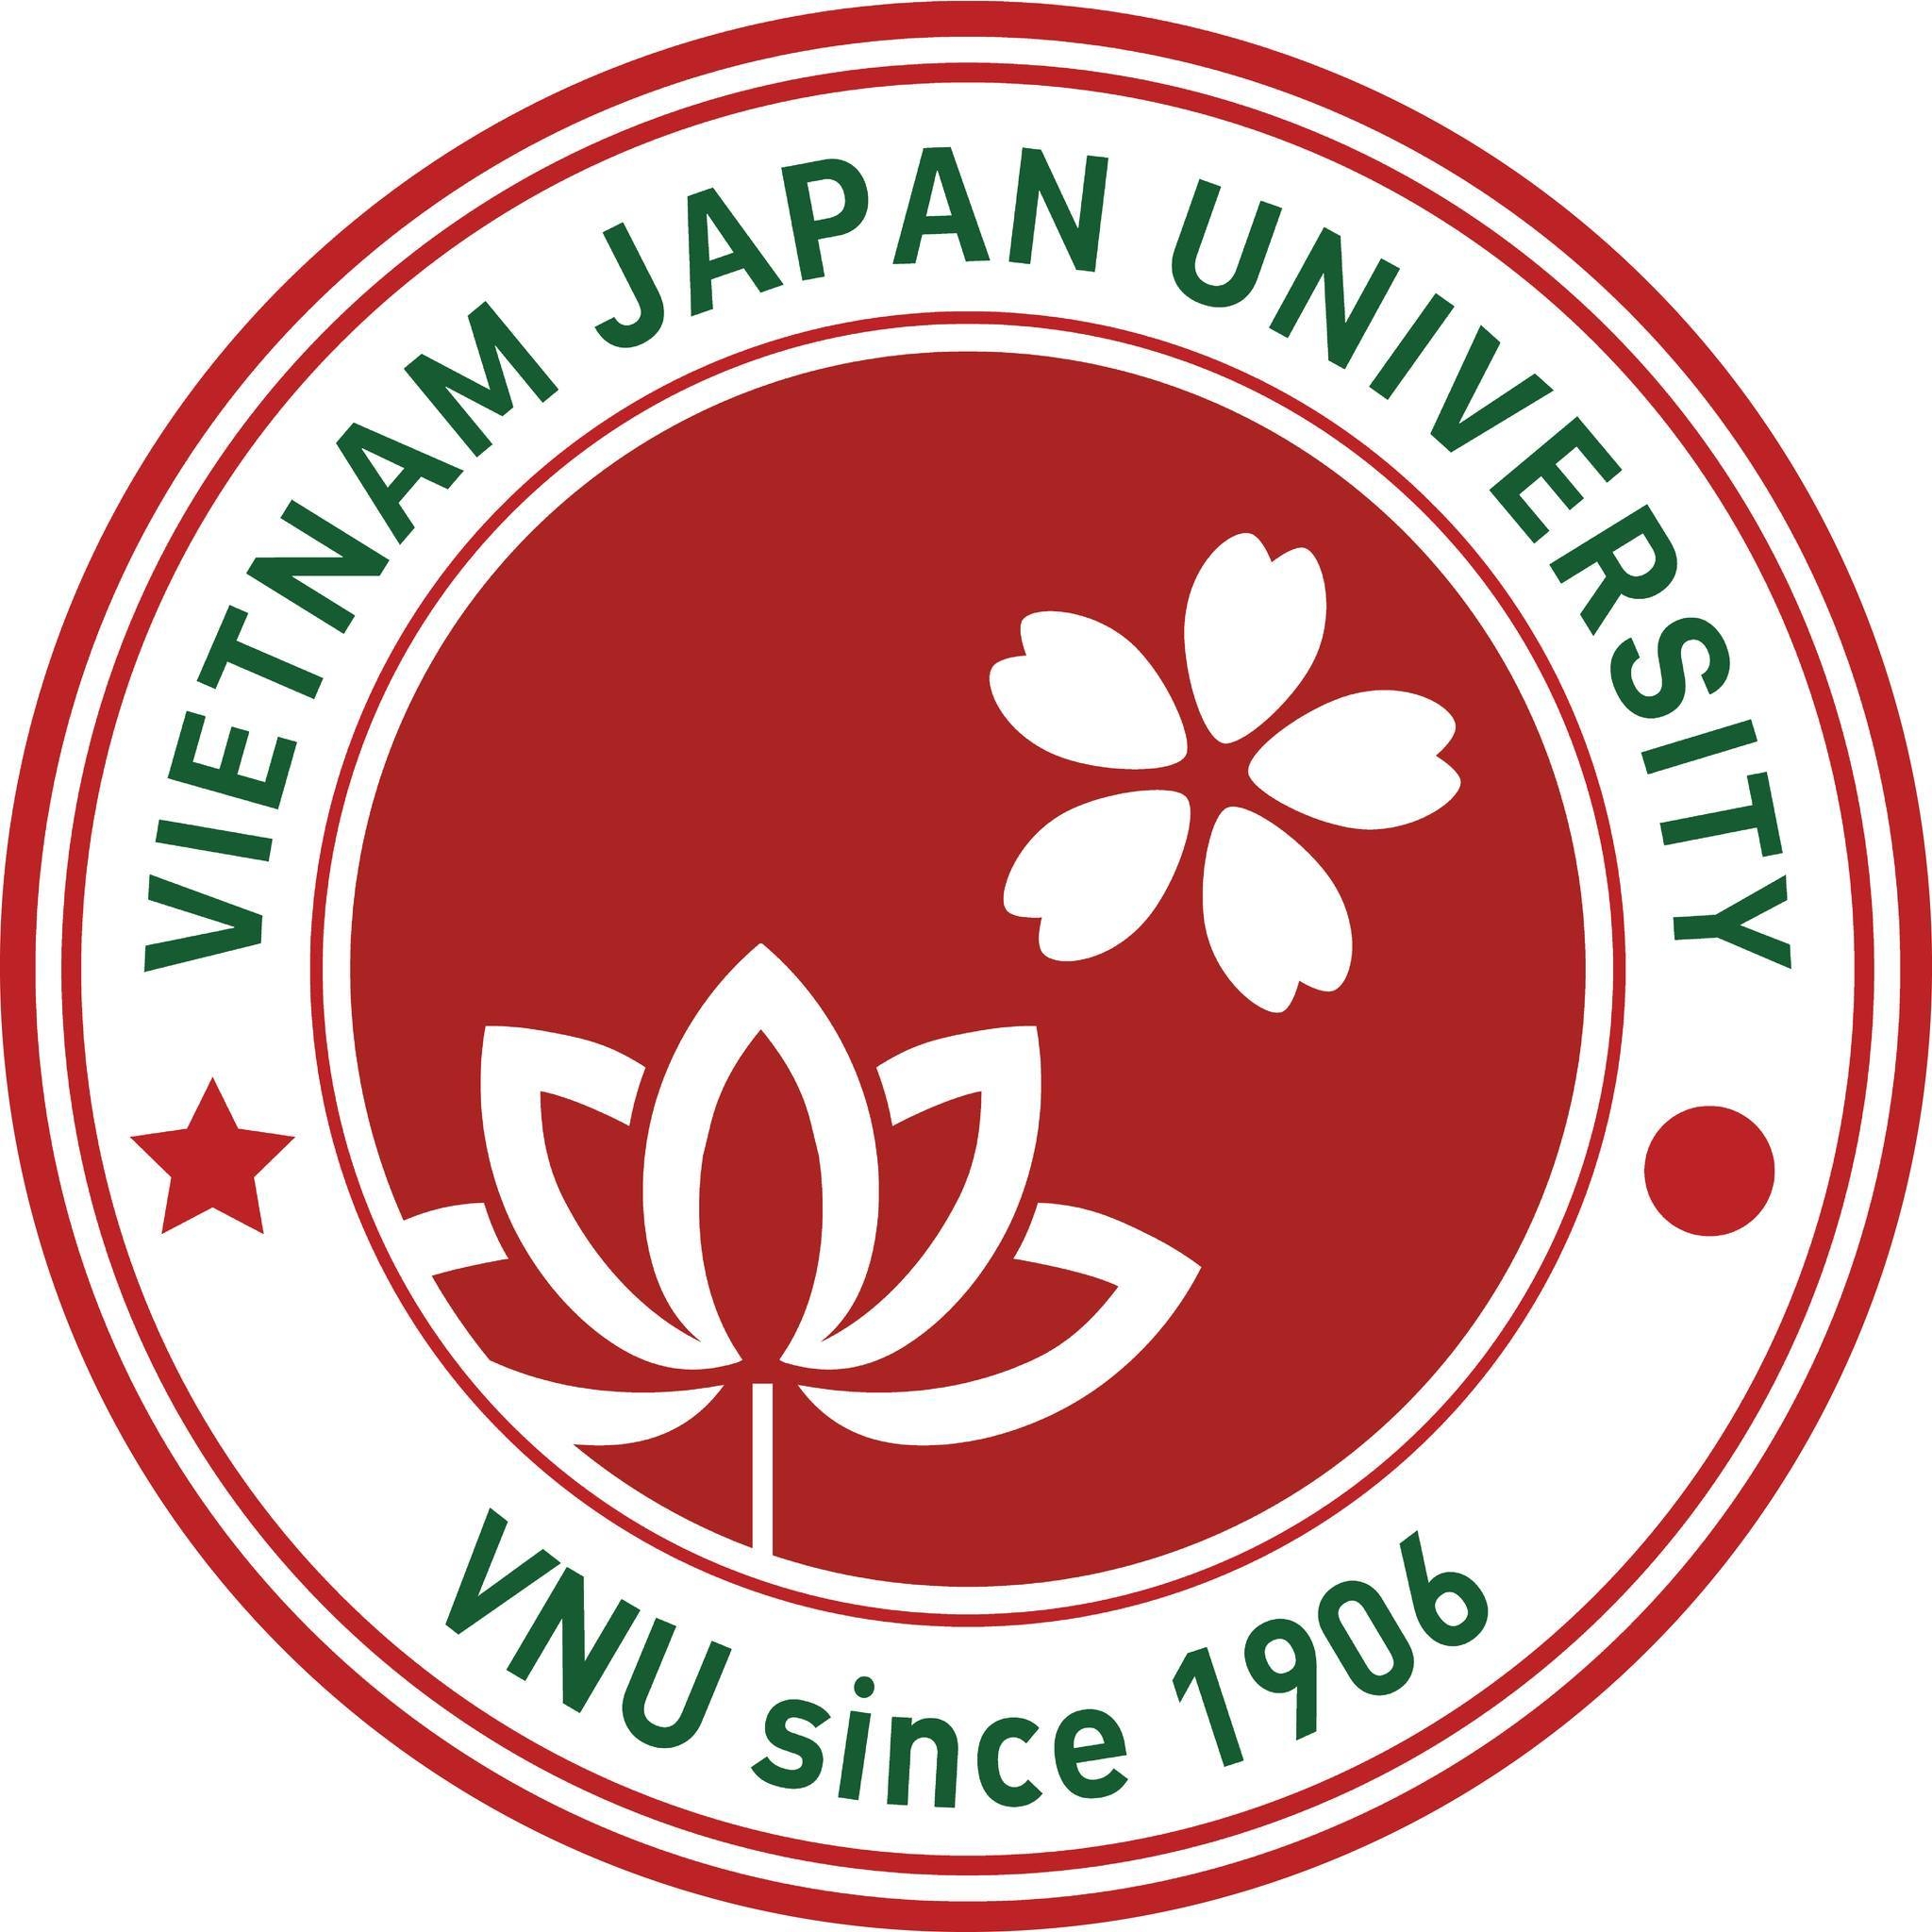 Vietnam Japan University